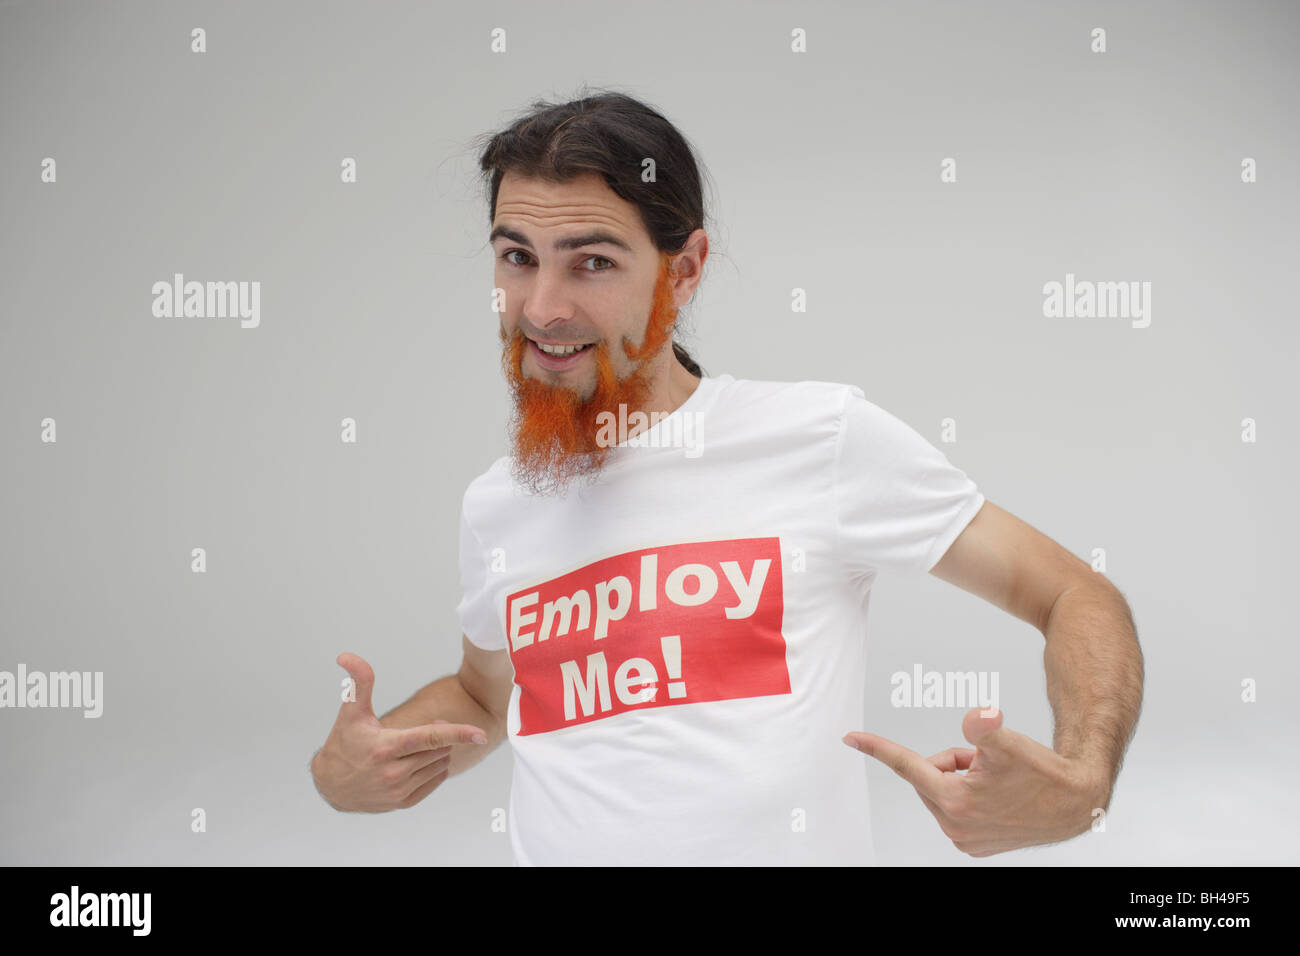 Ein junger Mann auf seinem T-shirt mit der Meldung "Beschäftigen mich!" gedruckt, Lächeln Stockfoto